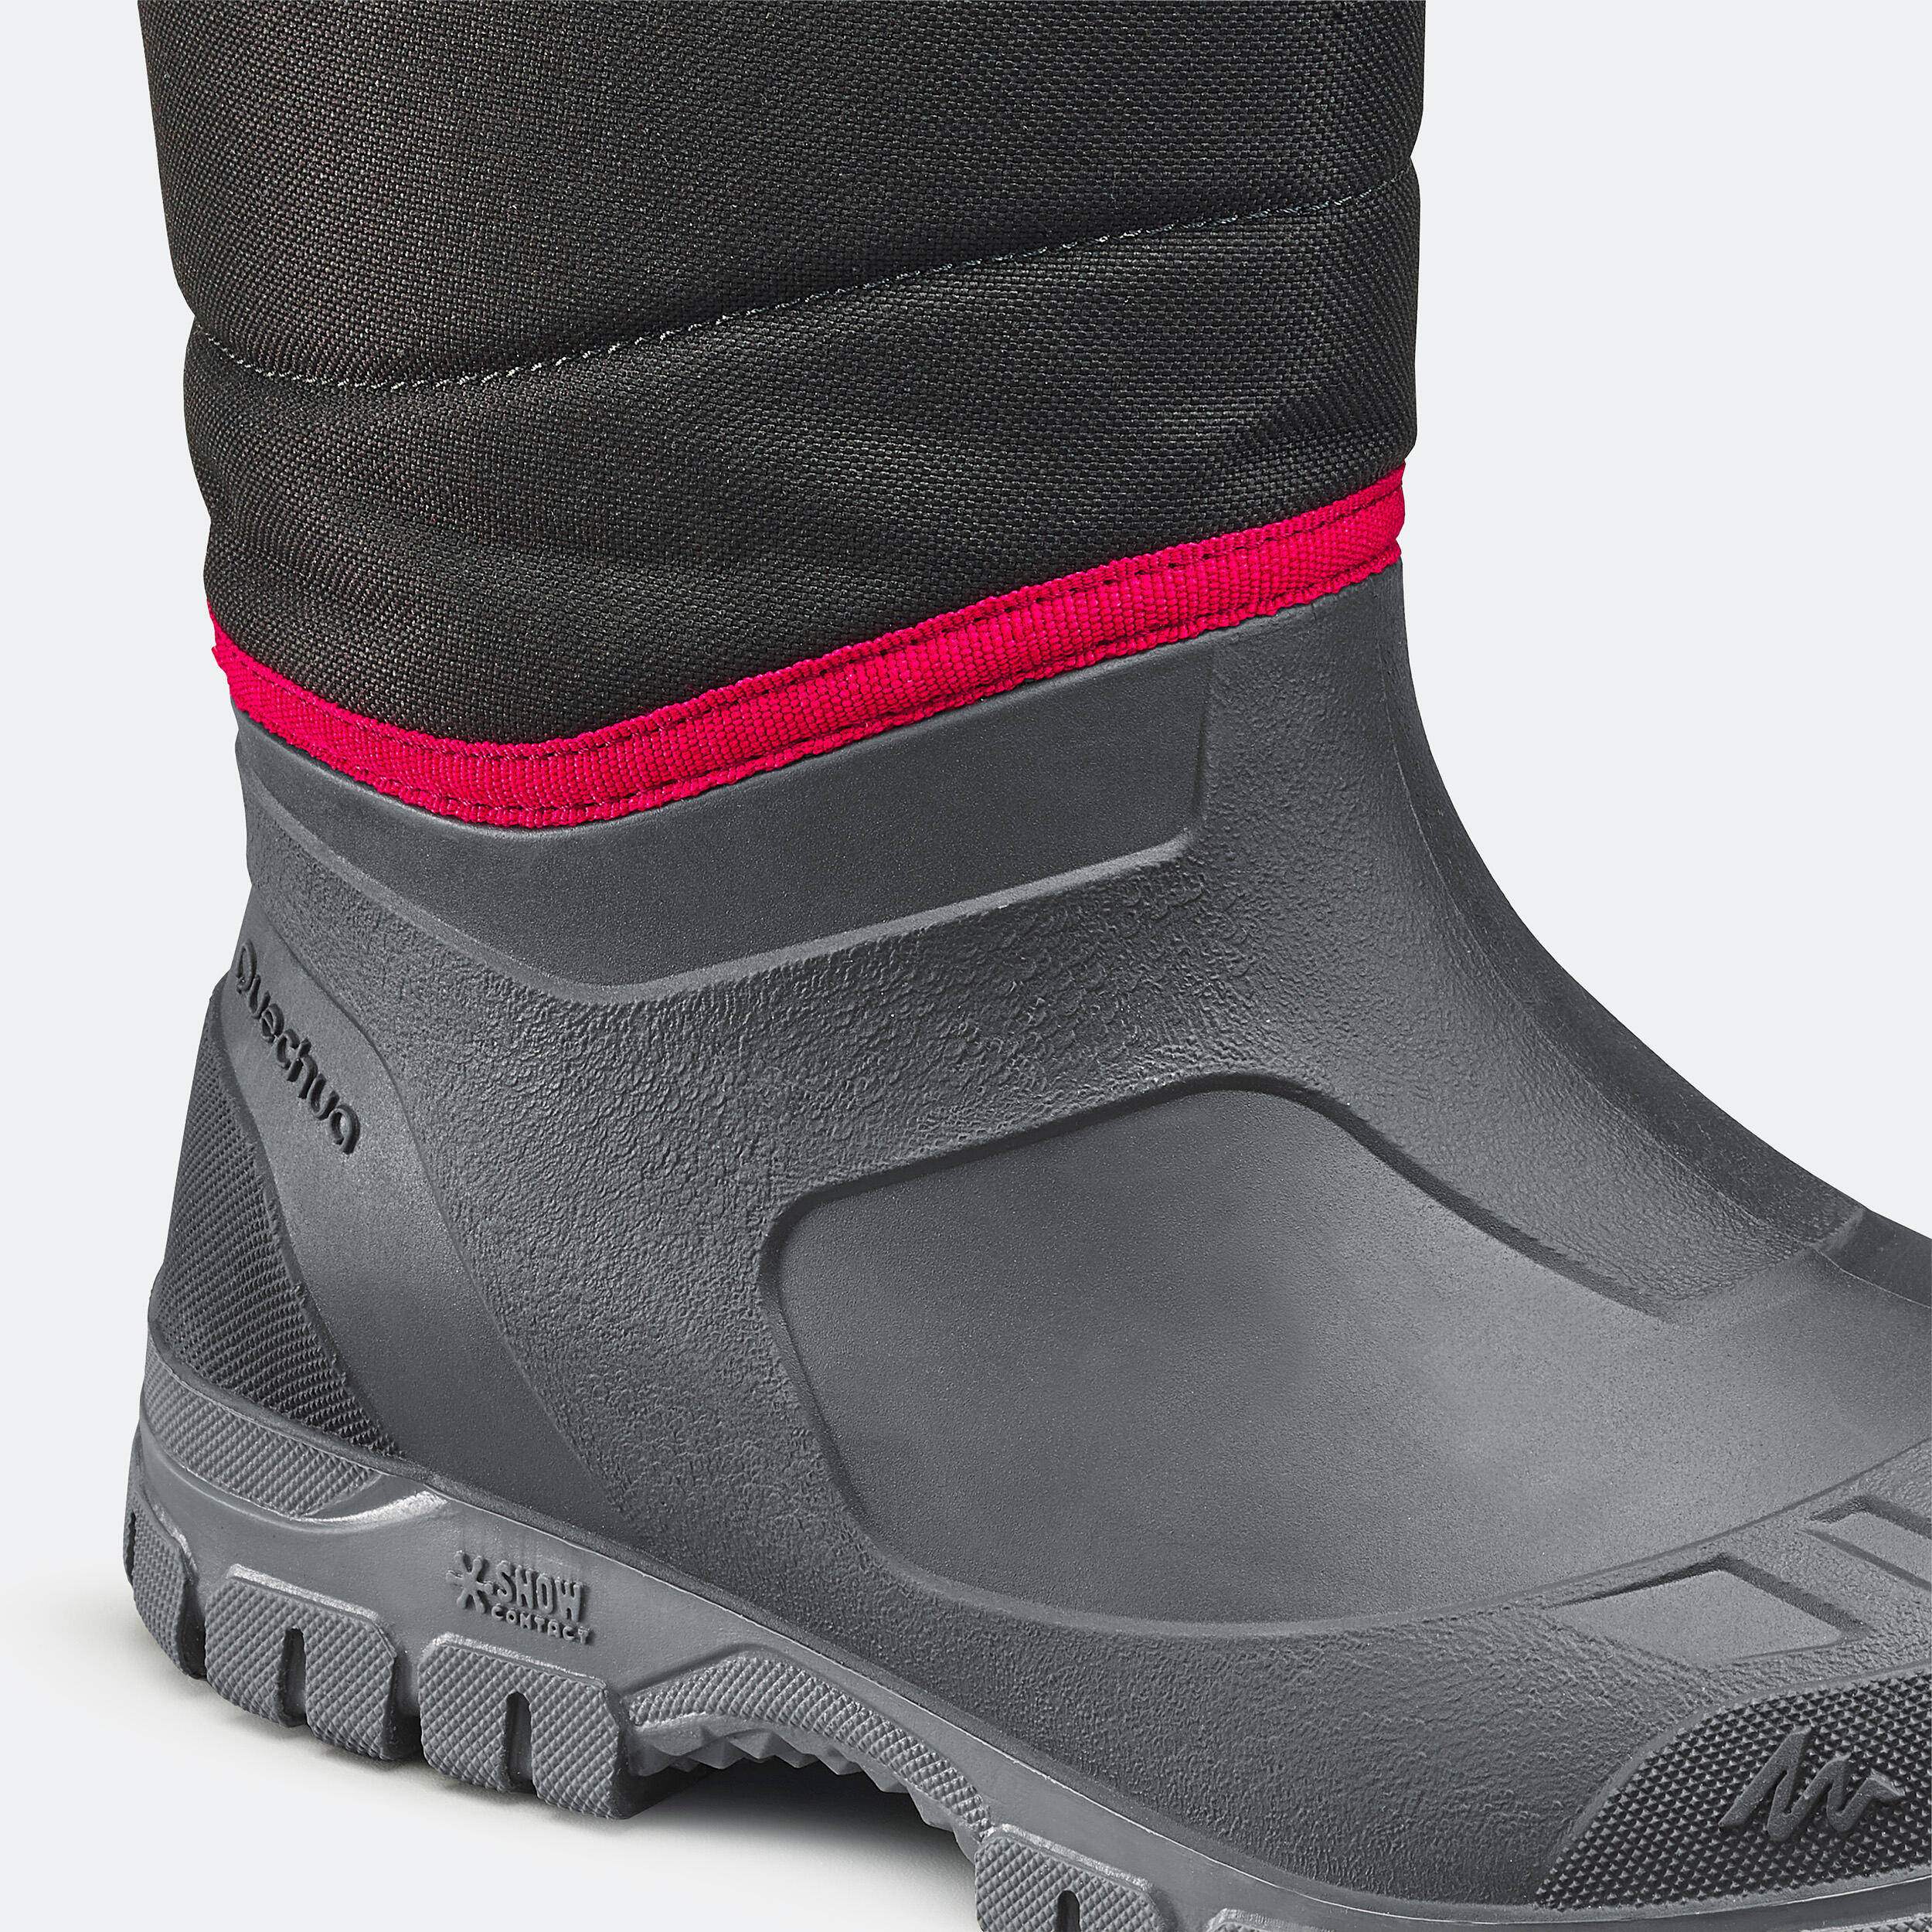 Men’s Winter Boots - SH 100 Black - QUECHUA